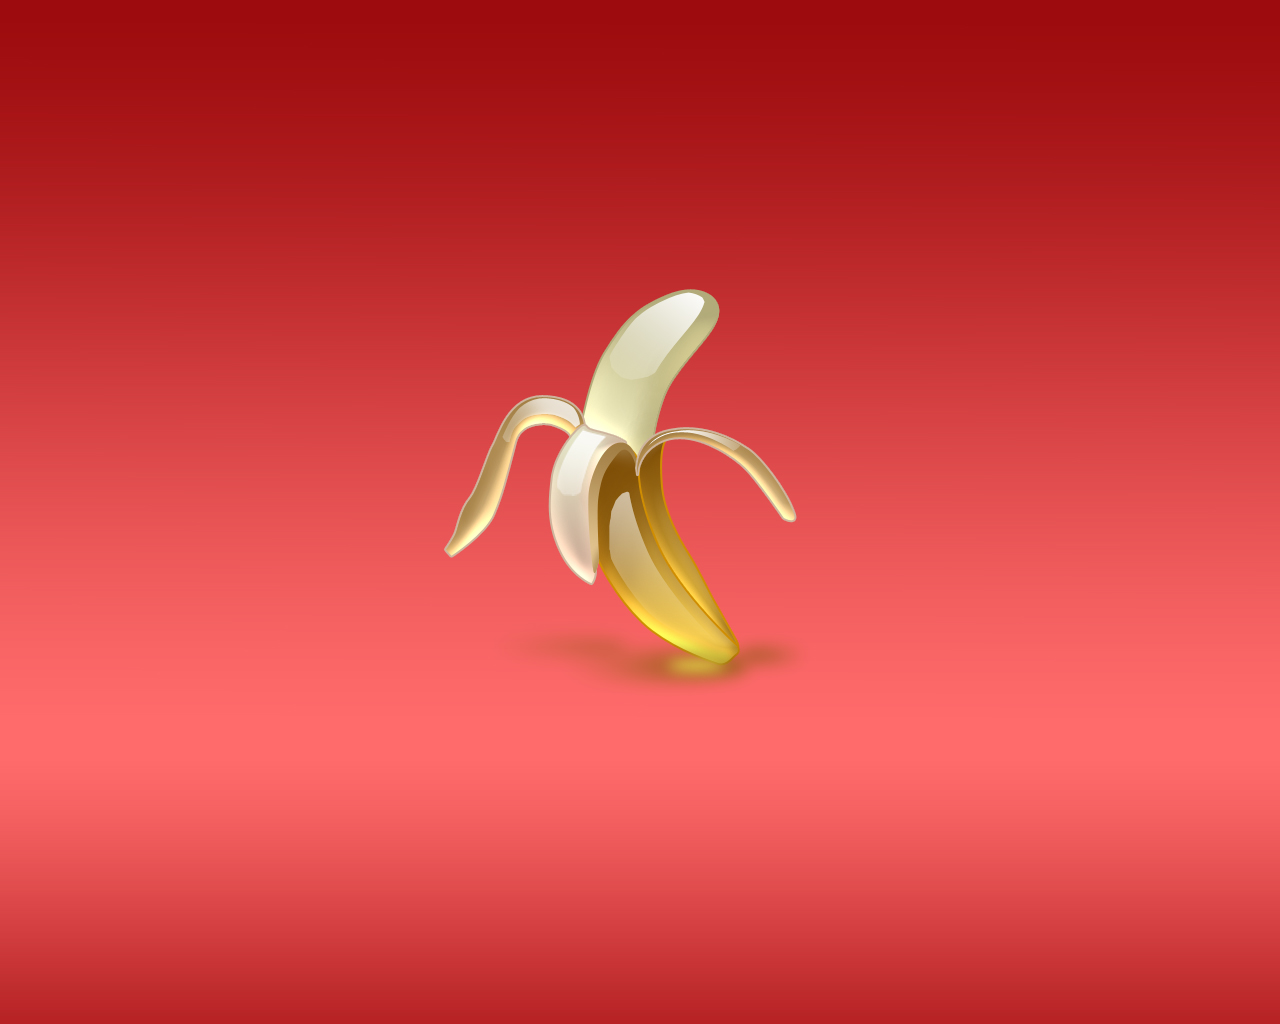 очищенный банан на красном фоне, скачать фото, обои на рабочий стол